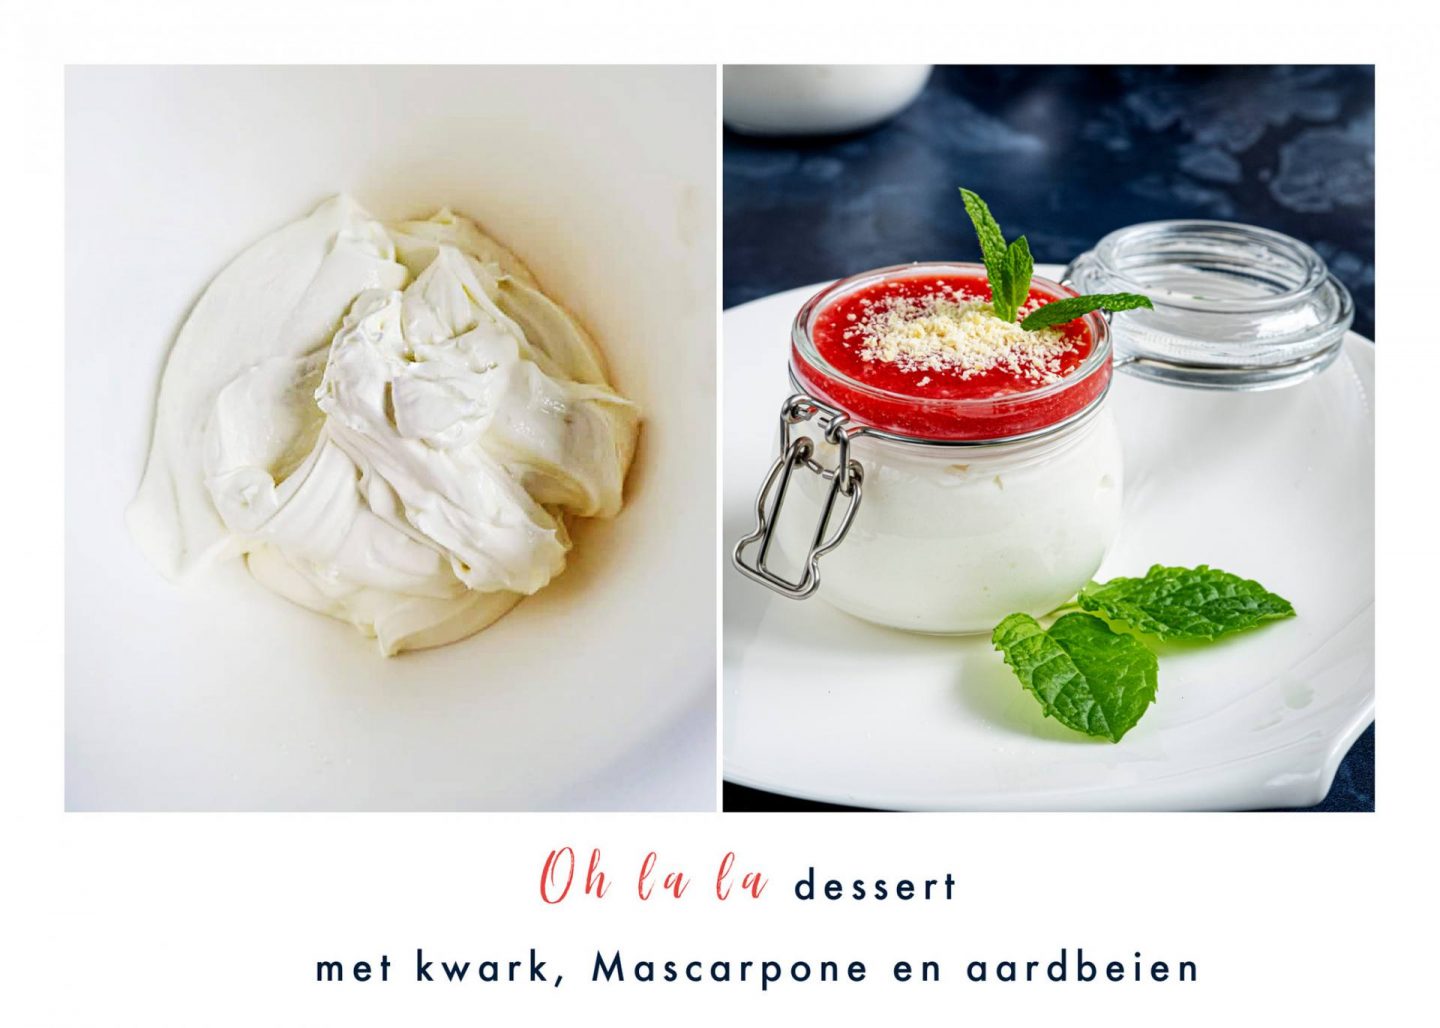 Oh la la dessert met kwark, Mascarpone en aardbeien